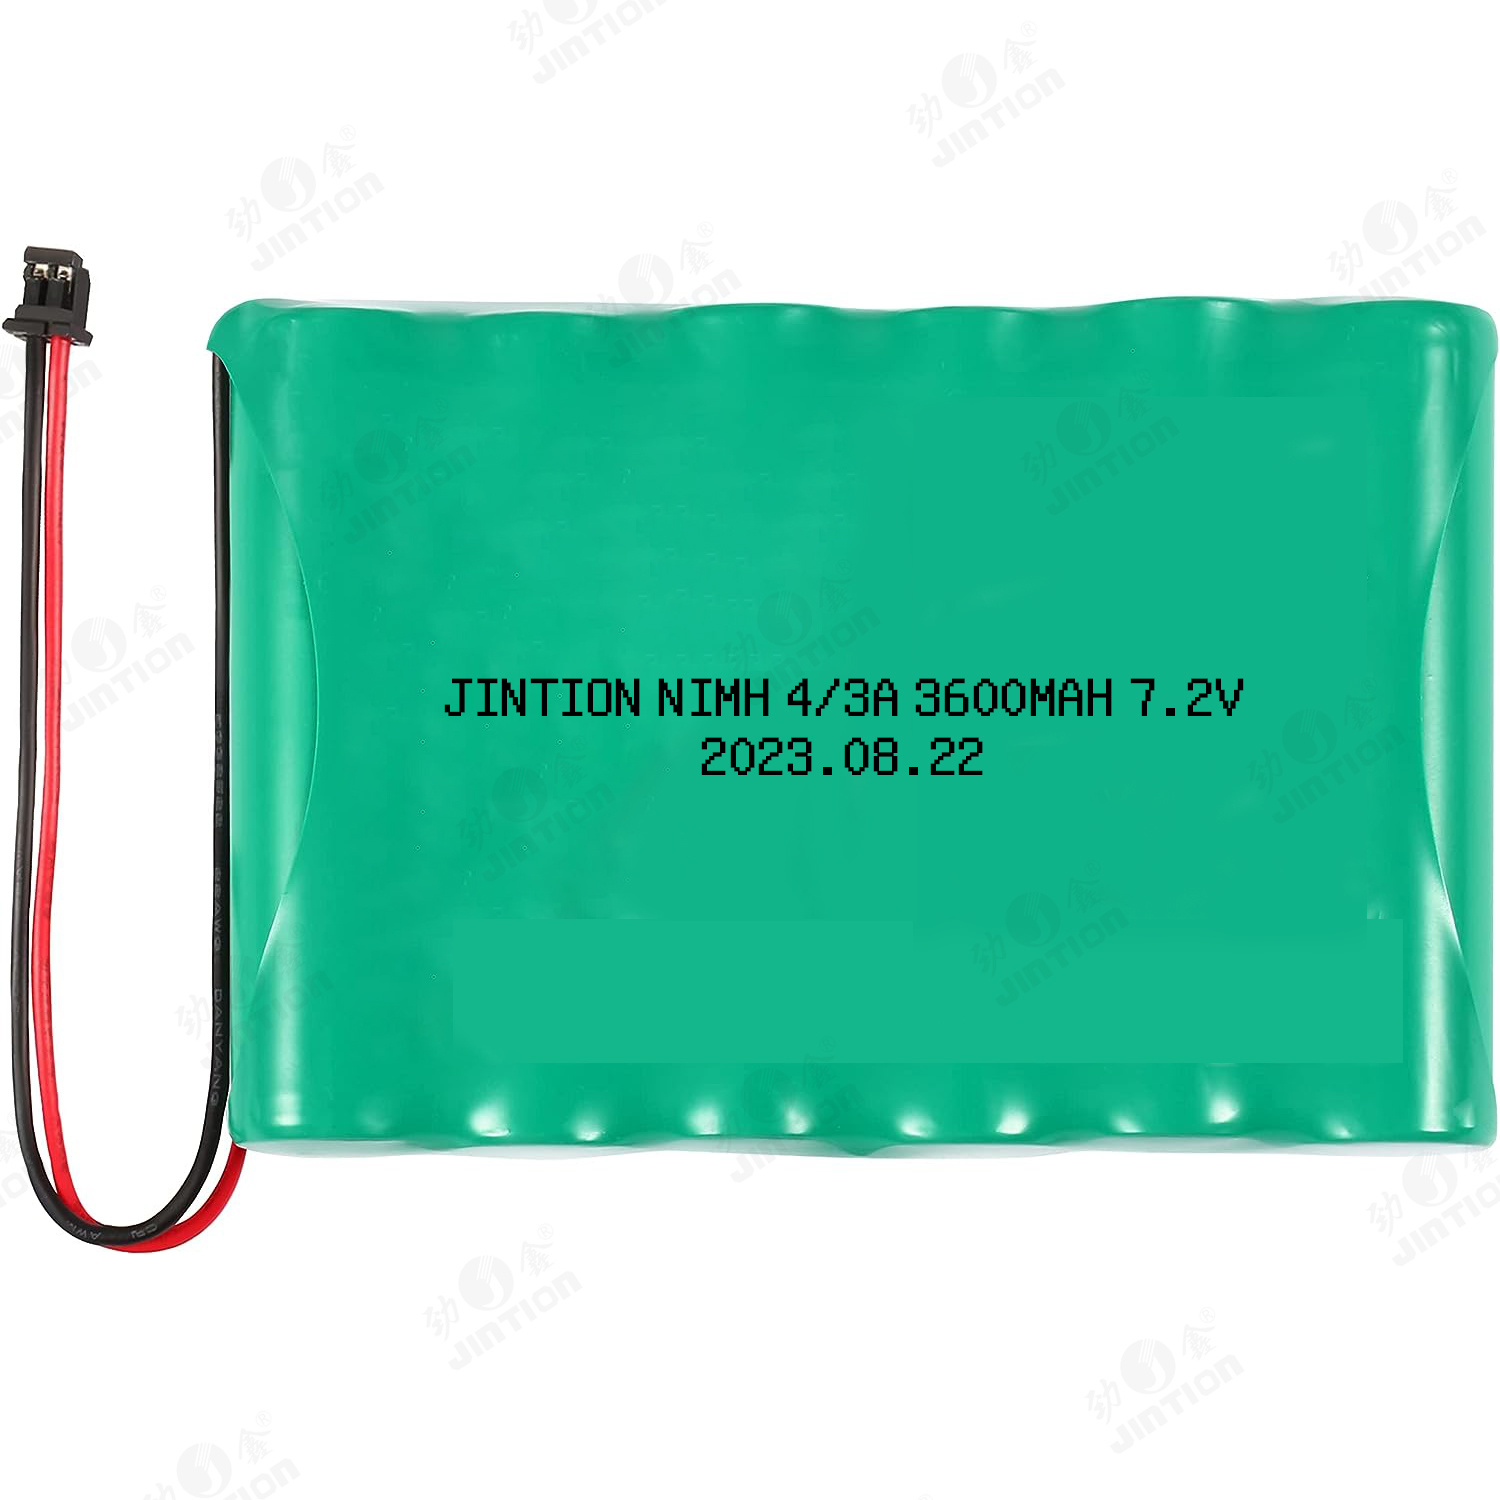 JINTION NIMH AA 2200mah 7.2v NiMH Battery Pack NiMH Battery For DSC 3G4000-BATT Cellular Communicato Alarm System